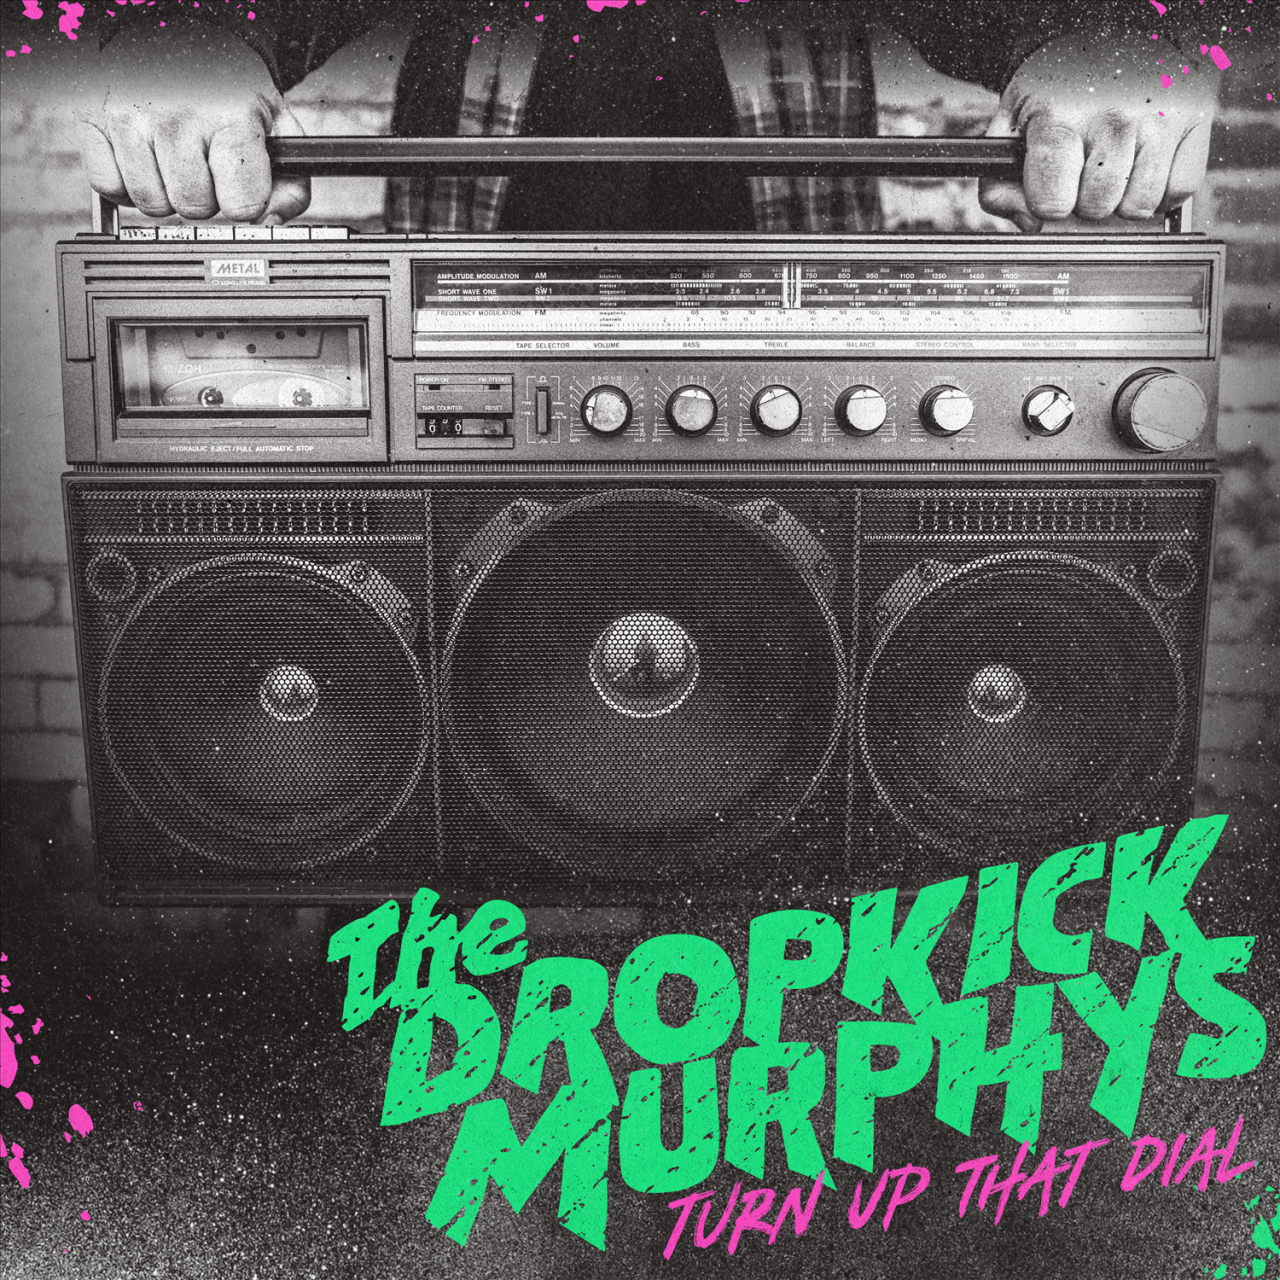 Das albumcover "Turn Up That Dial" von The Dropkick Murphys ist schwarz-weiß. Es zeigt einen großen Ghettoblaster. Der Bandname und der Albumtitel sind grün und pink.